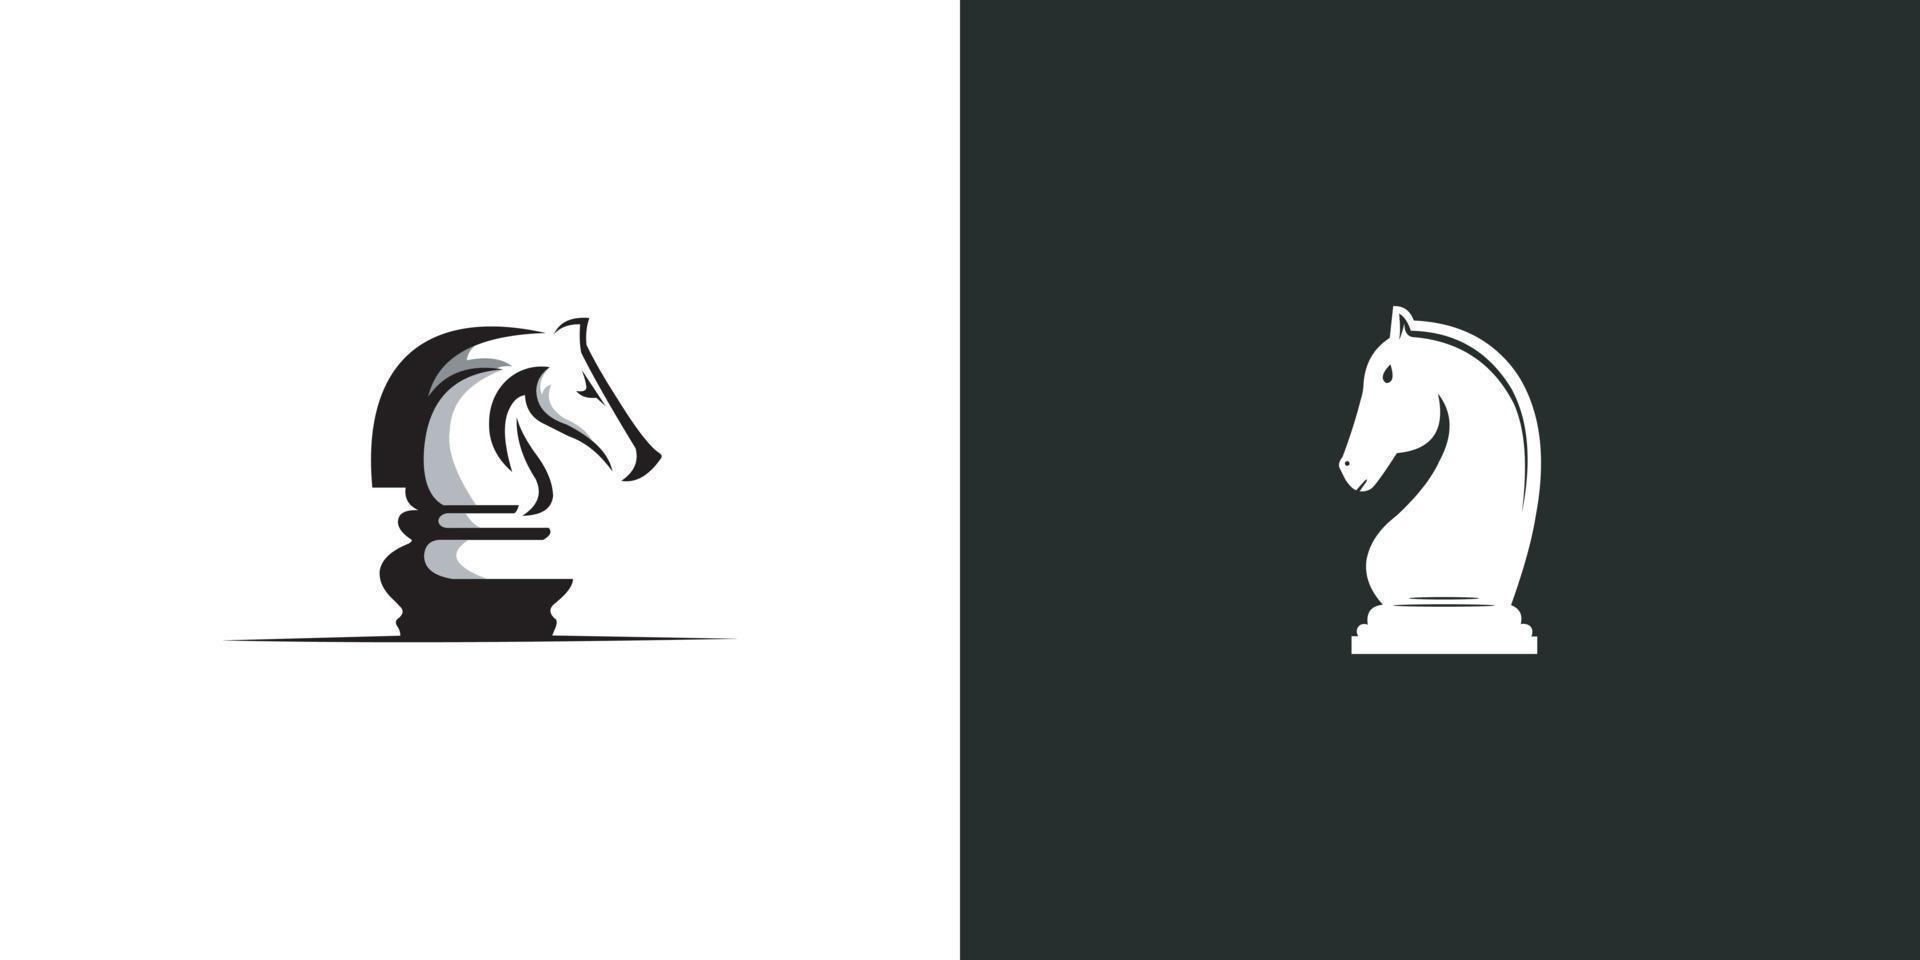 conjunto, de, cabeza, caballo, logotipo, vector